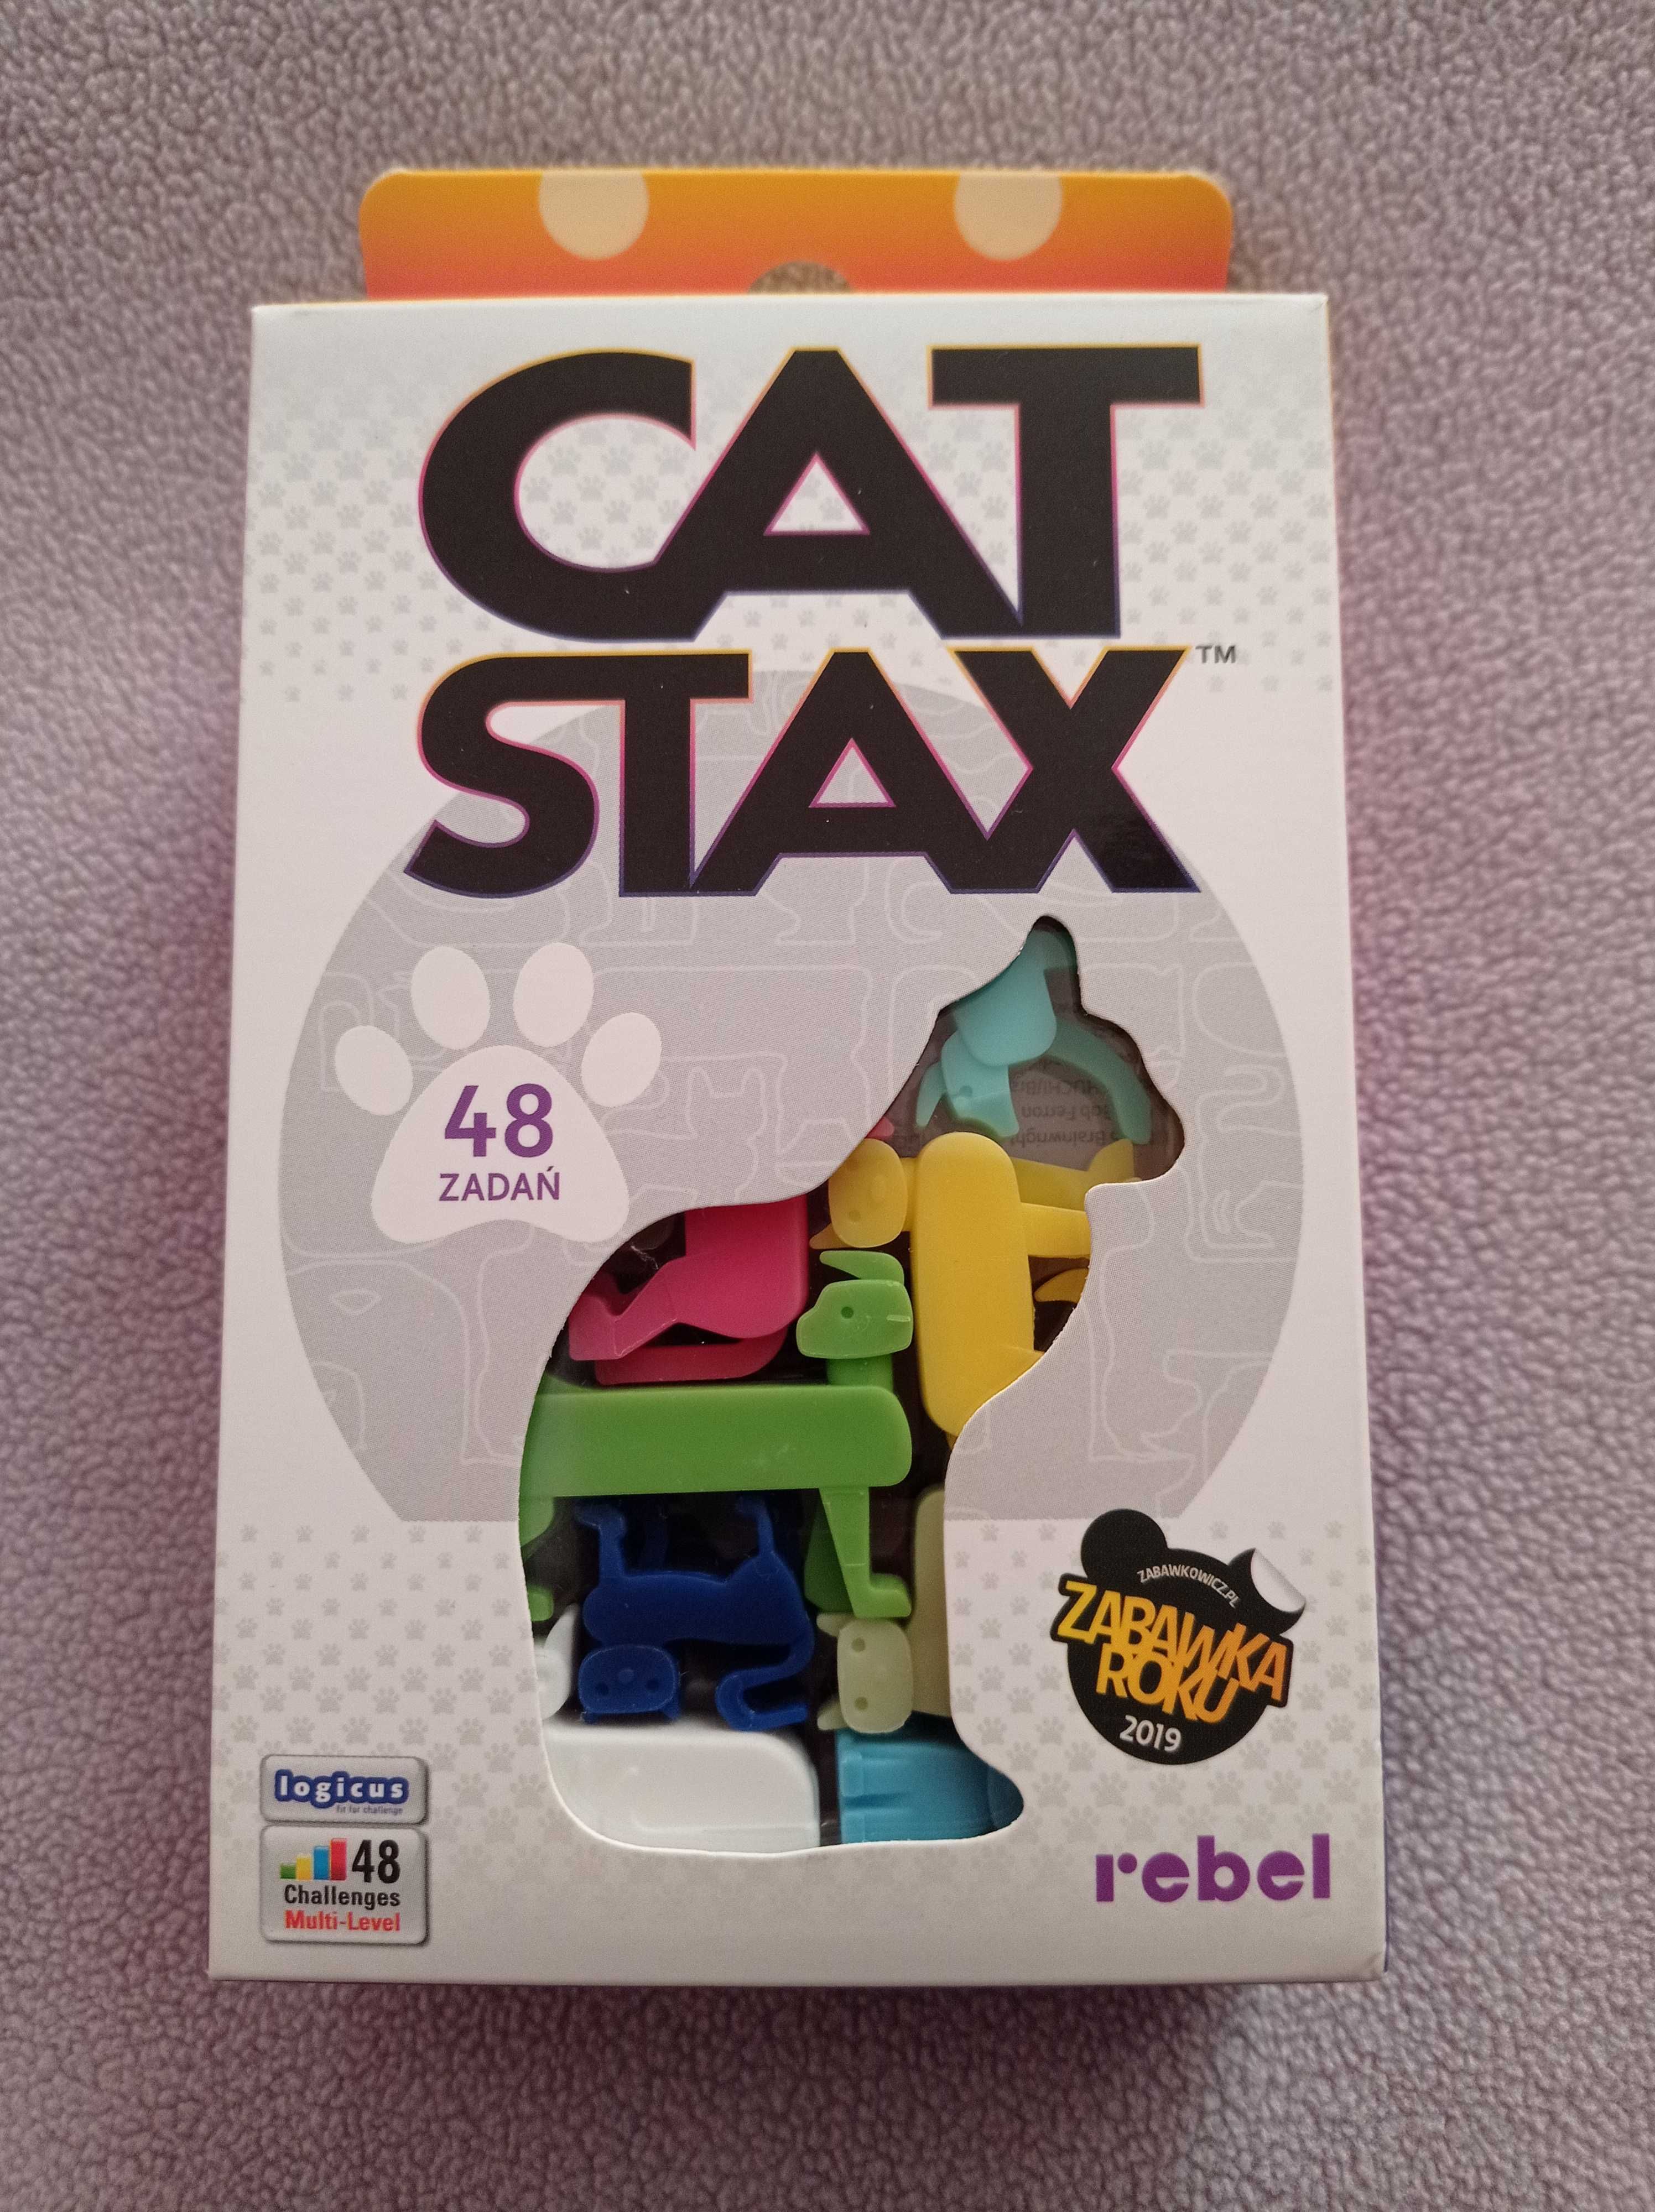 Cat stax - łamigłówka, gra logiczna, koty, Rebel, Huch!